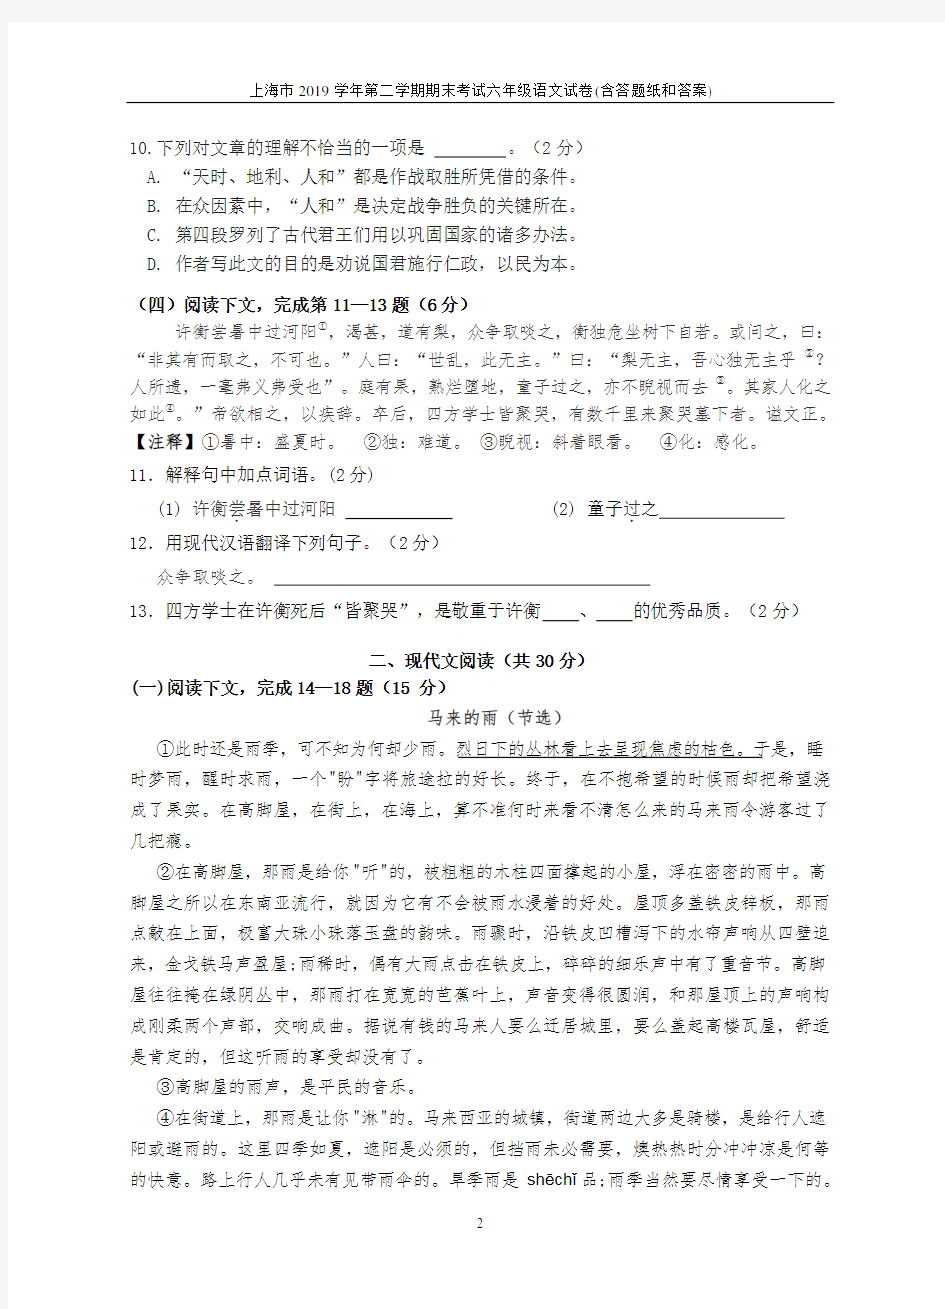 上海市2019学年第二学期期末考试六年级语文试卷(含答题纸和答案)